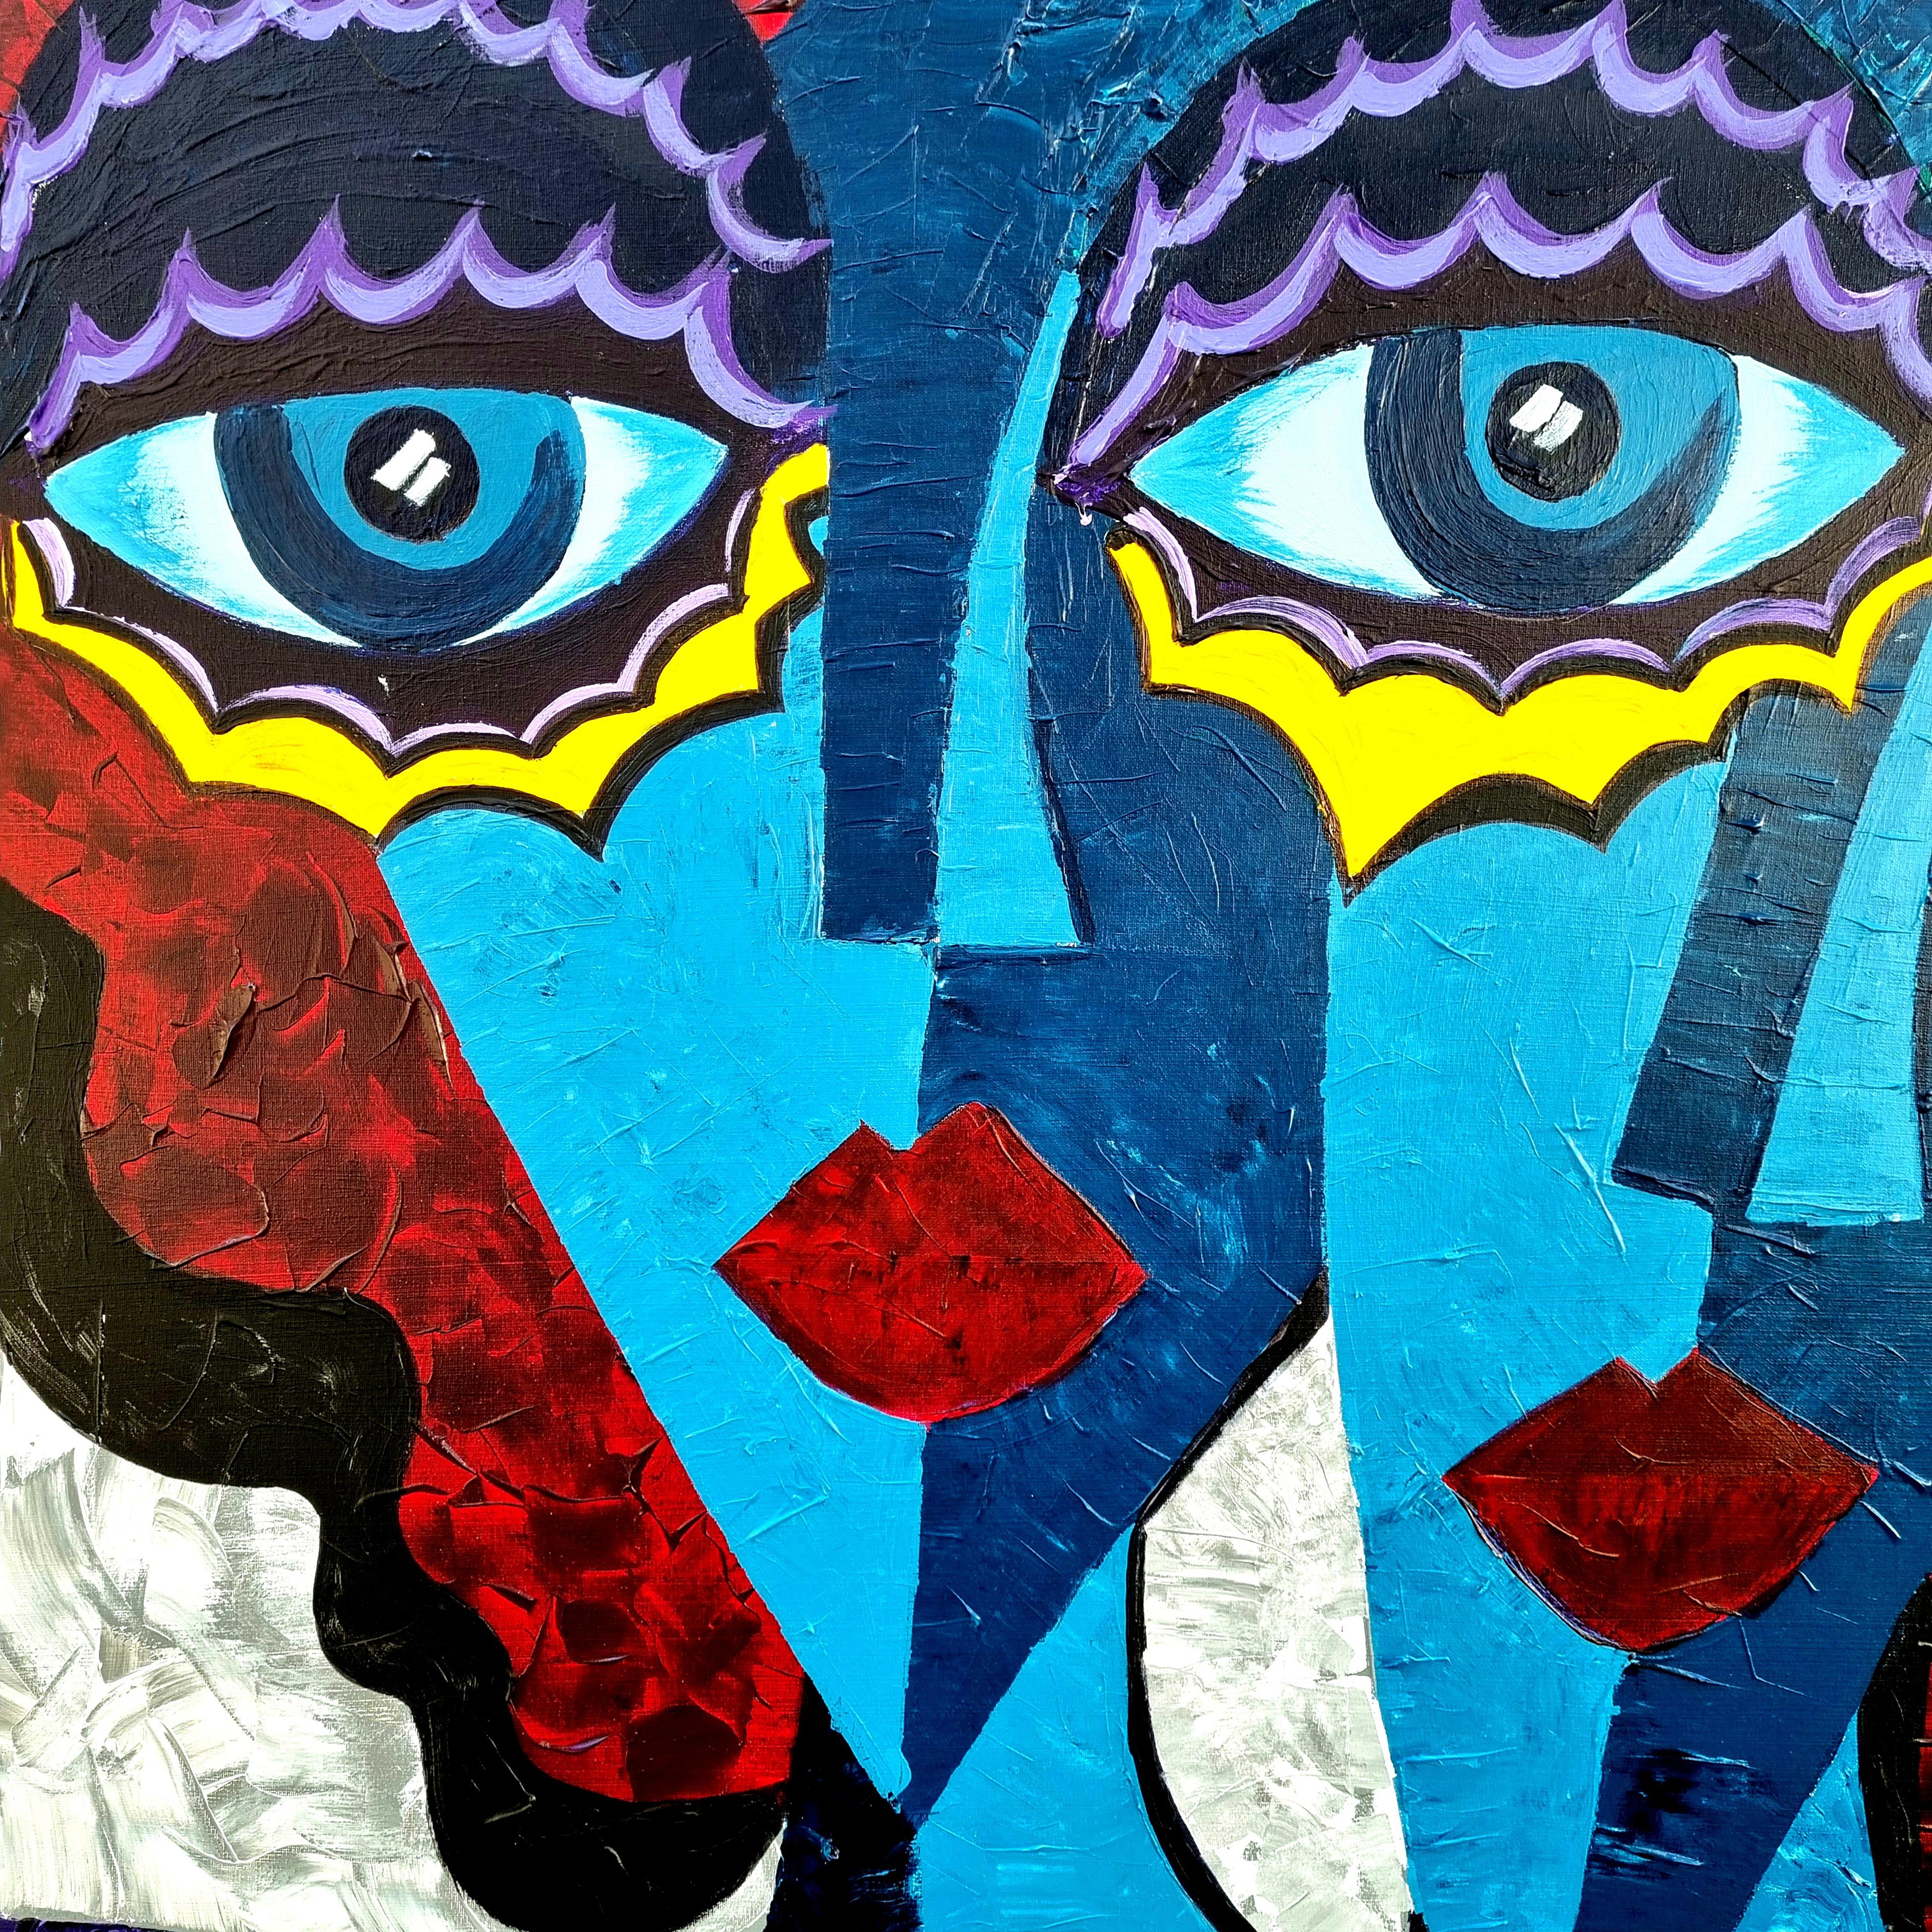 91.-R. Poch. Deux femmes. yeux bleu. Peinture originale sur toile acrylique

Né à Badalona (Barcelone) en 1955.
Photographe et réalisateur de films publicitaires.
Partenaire fondateur de la société de production publicitaire La Cosa de las Peliculas